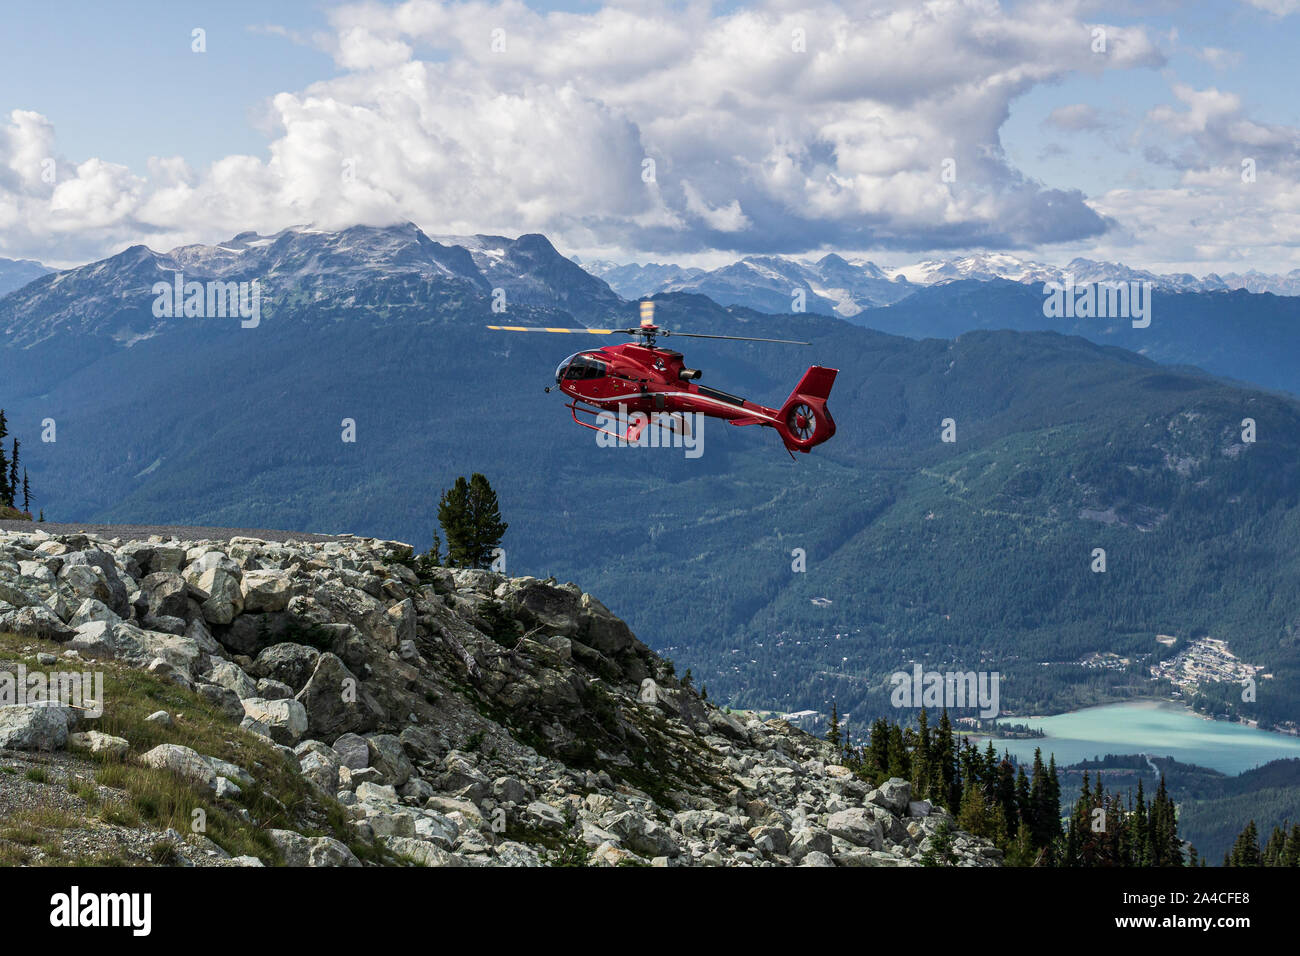 WHISTLER, Canada - 25 agosto 2019: rosso elicottero sul Monte Blackcomb aria per tour di ricerca. Foto Stock